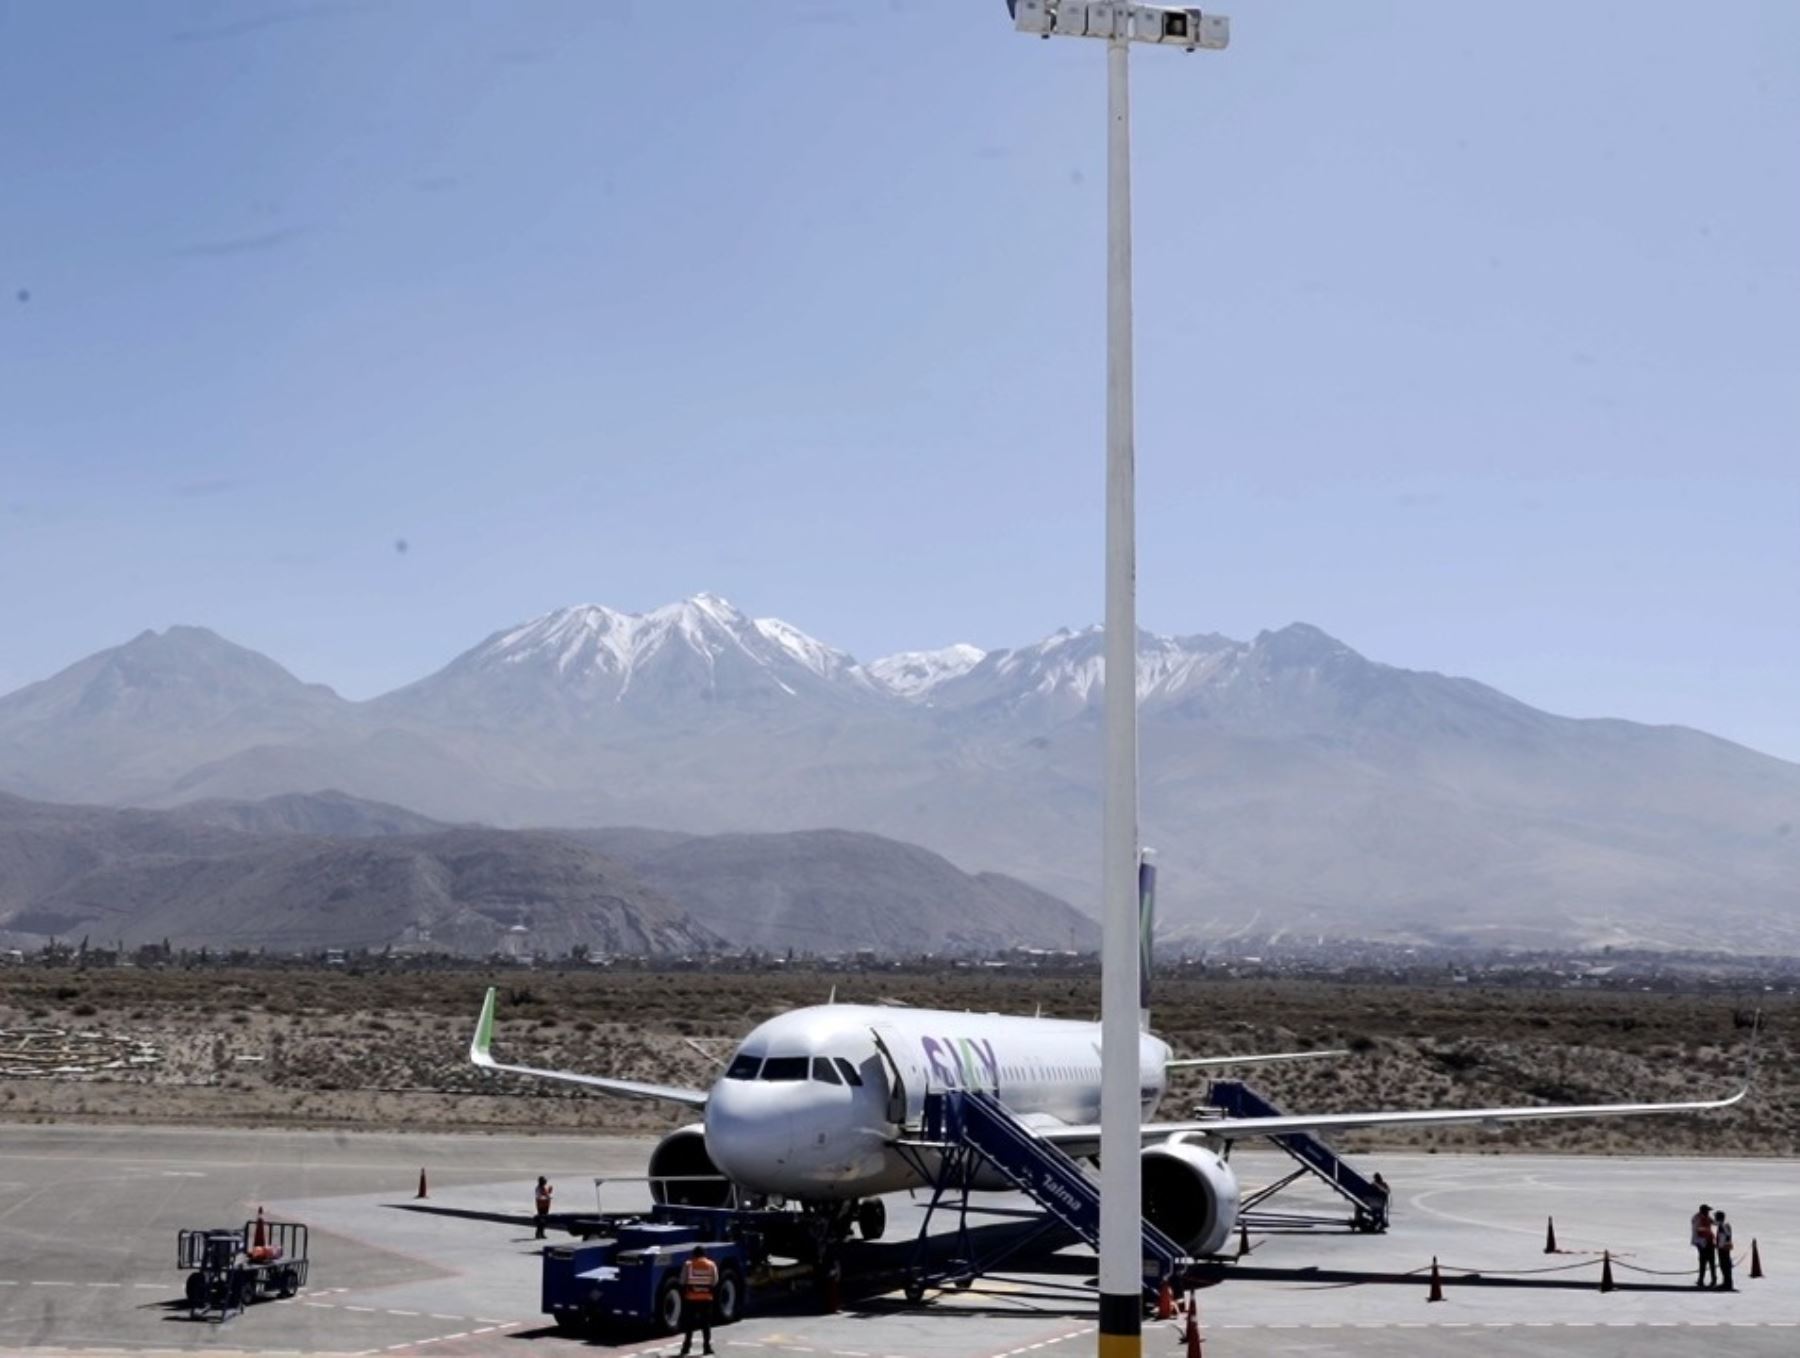 El aeropuerto Alfredo Rodríguez Ballón de Arequipa empezará a operar desde el 19 de diciembre, informó AAP. Foto: ANDINA/Difusión